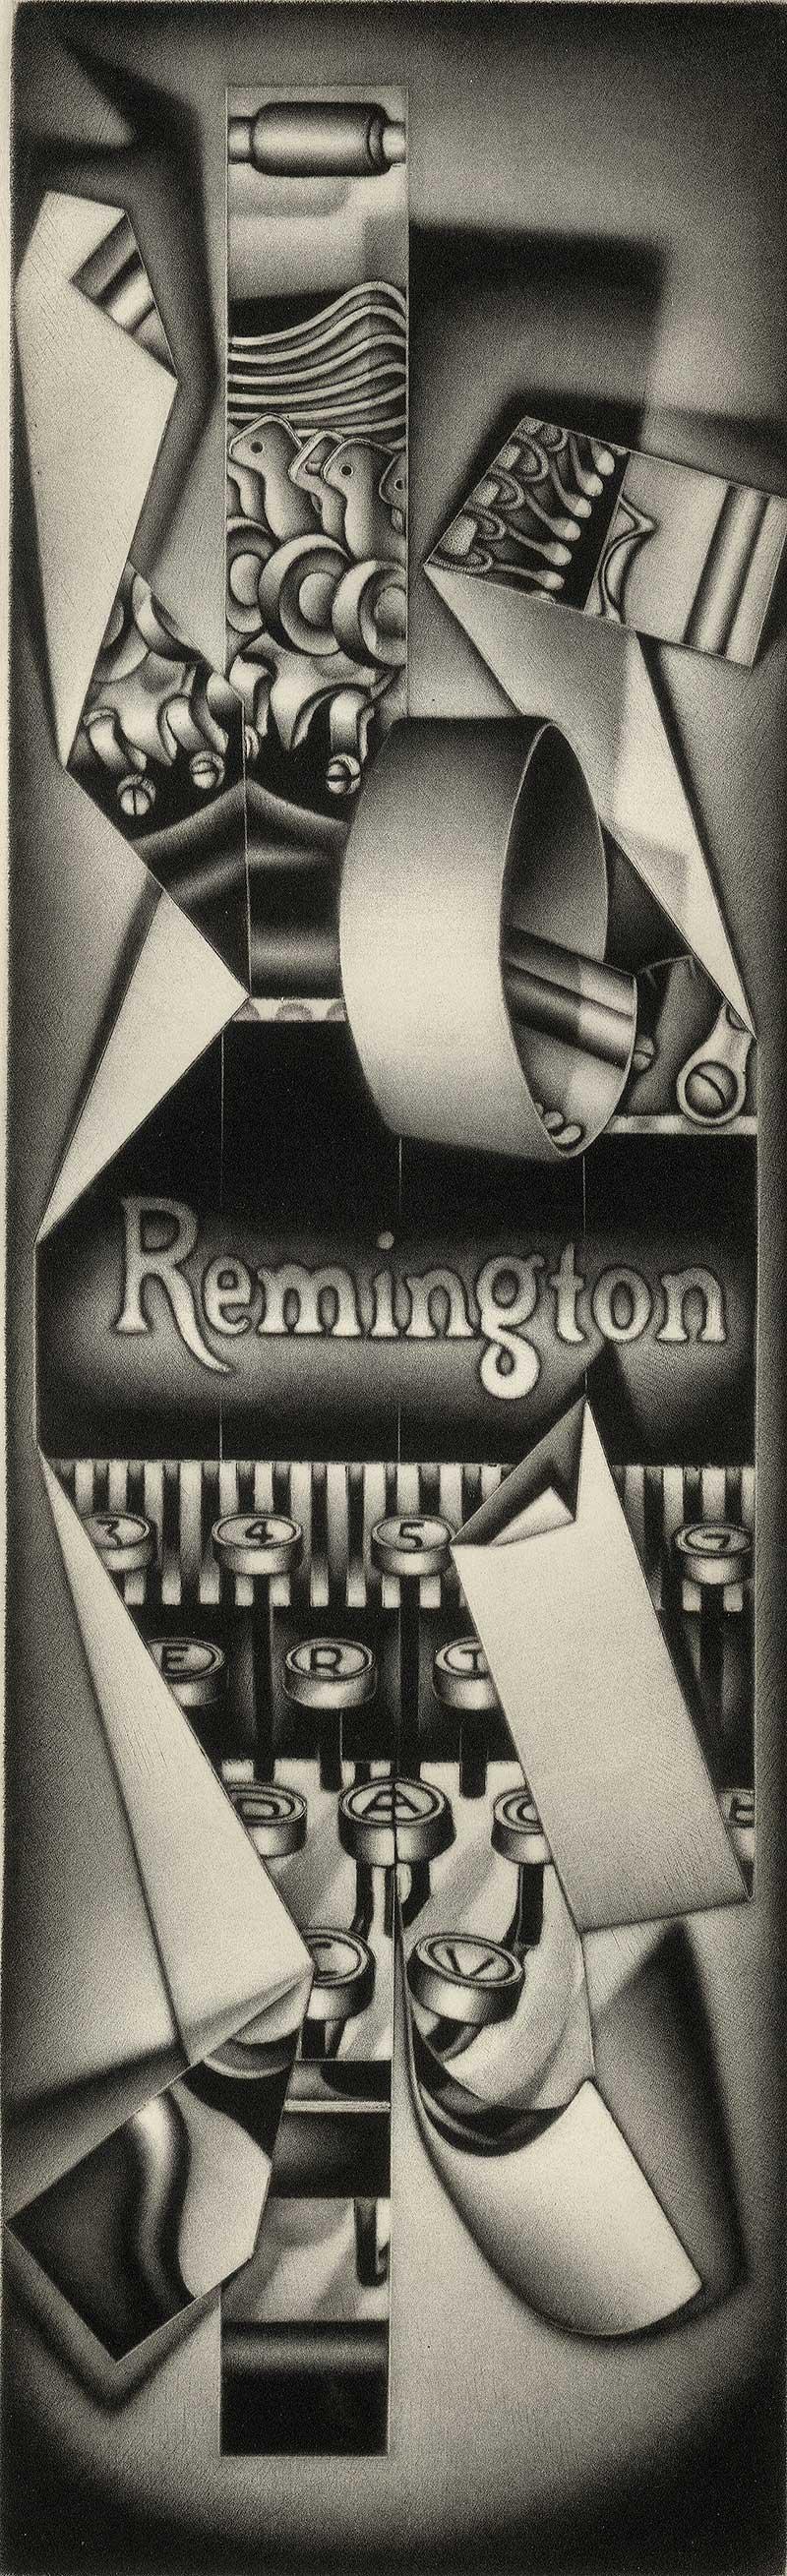 Remington Strip Teese mit Streifen